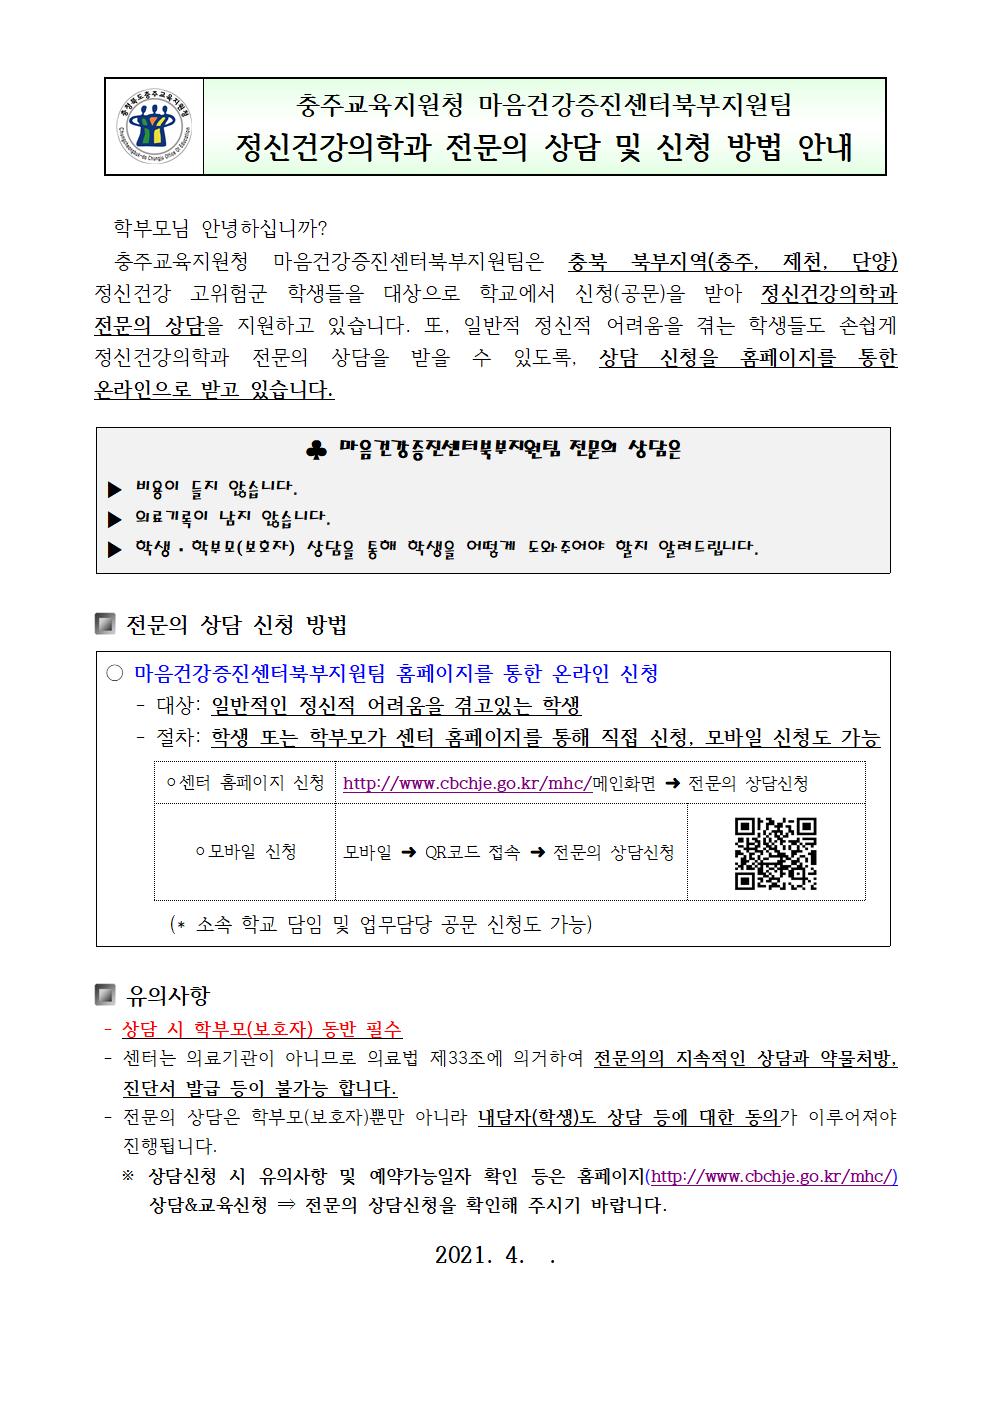 충청북도충주교육지원청 행복교육센터_가정통신문(샘플)001